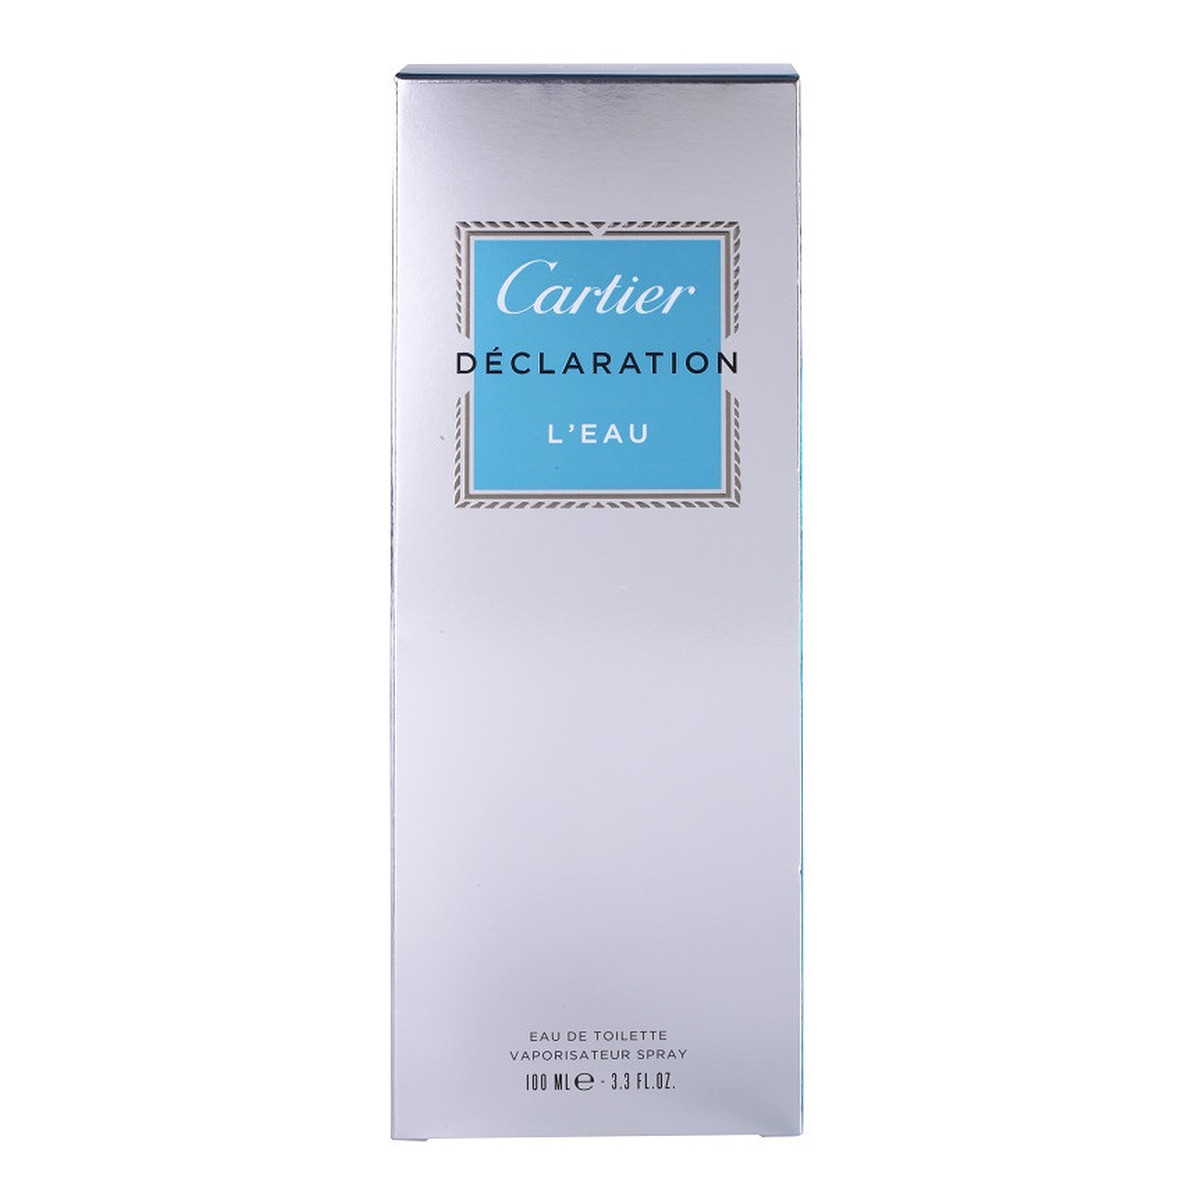 Cartier Declaration L'Eau Woda toaletowa dla mężczyzn 100ml